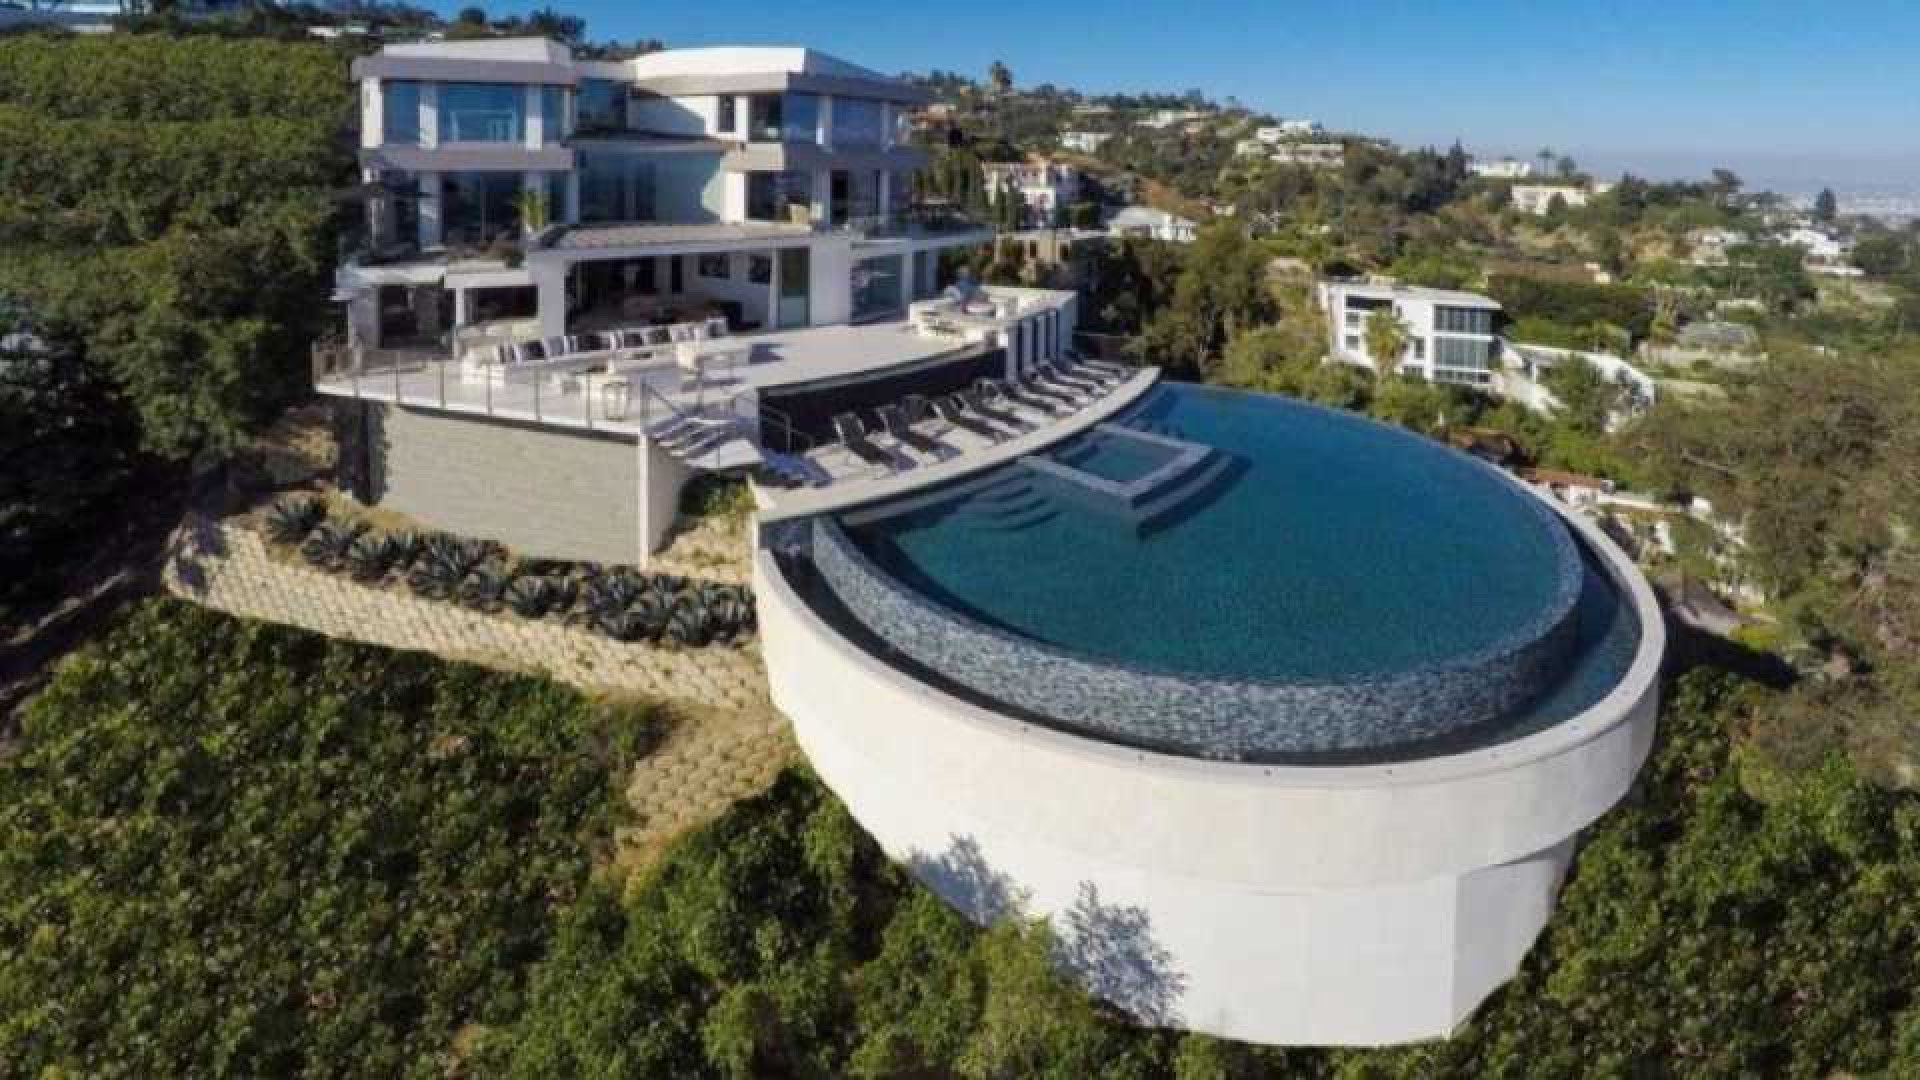 Reinout Oerlemans haalt zijn luxe villa in Los Angeles uit de verkoop. Zie foto's